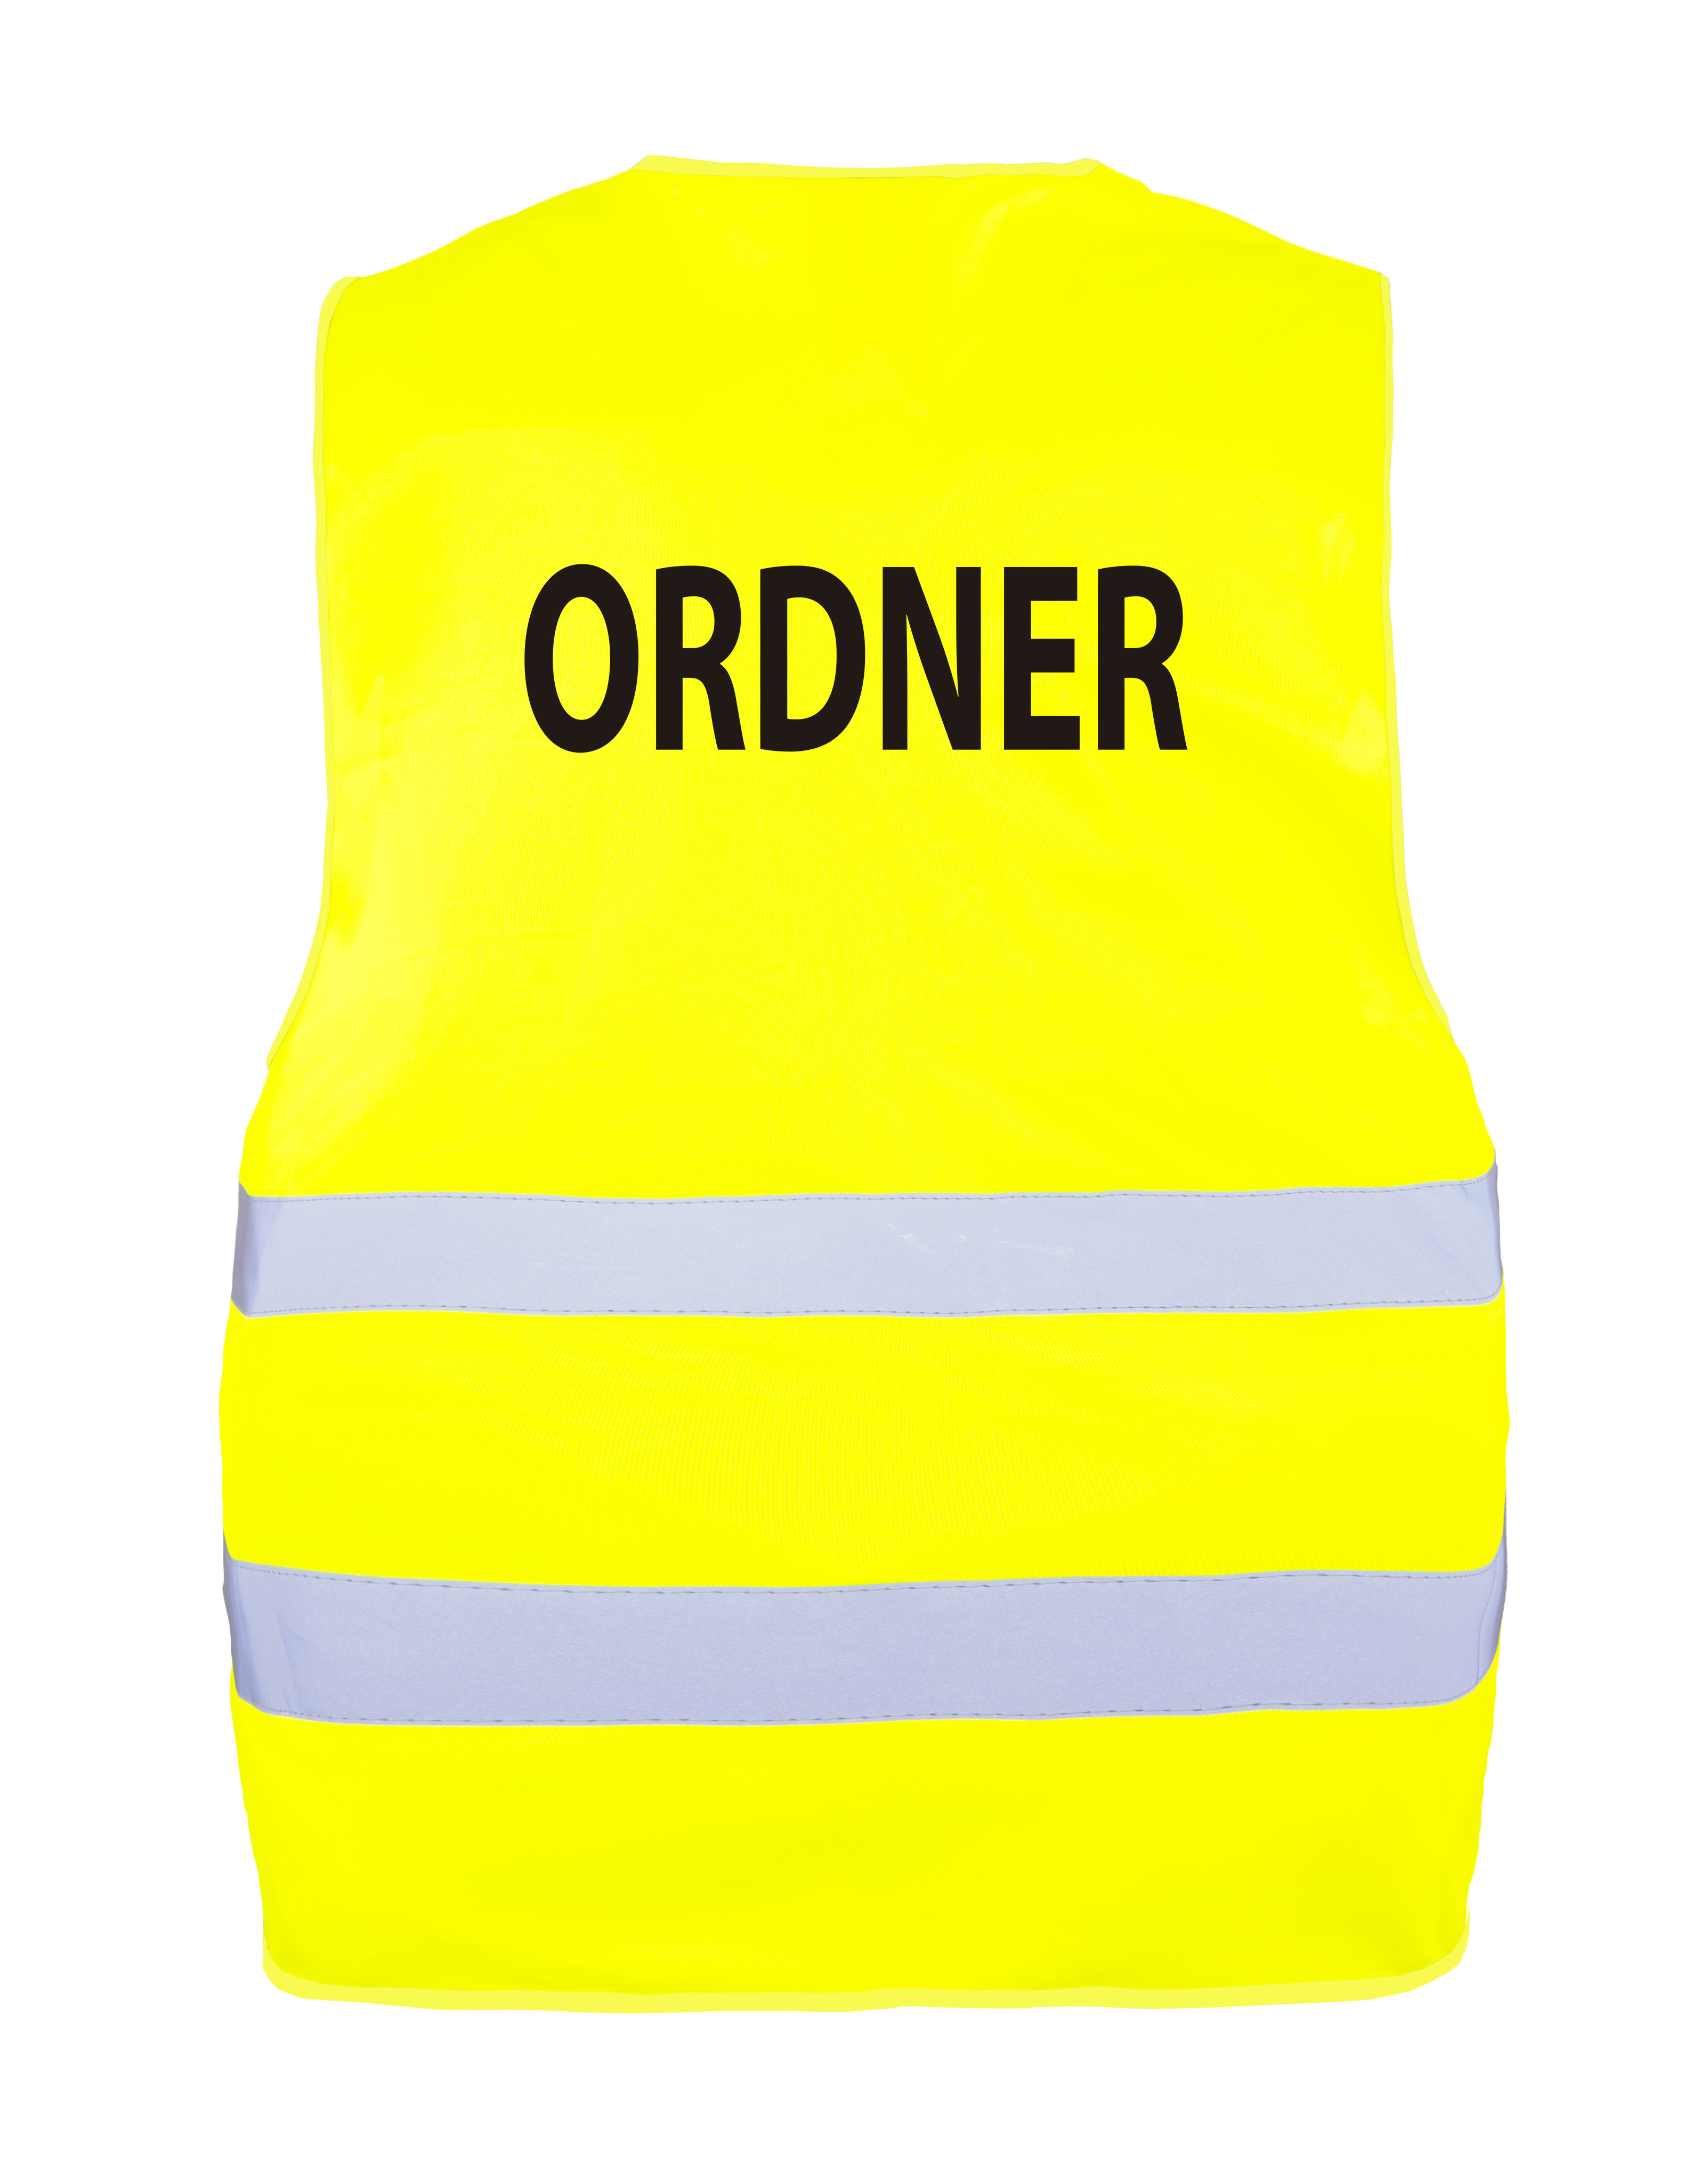 KORNTEX-Warnweste Safety Vest Passau - Ordner X200ORD zum Personalisieren